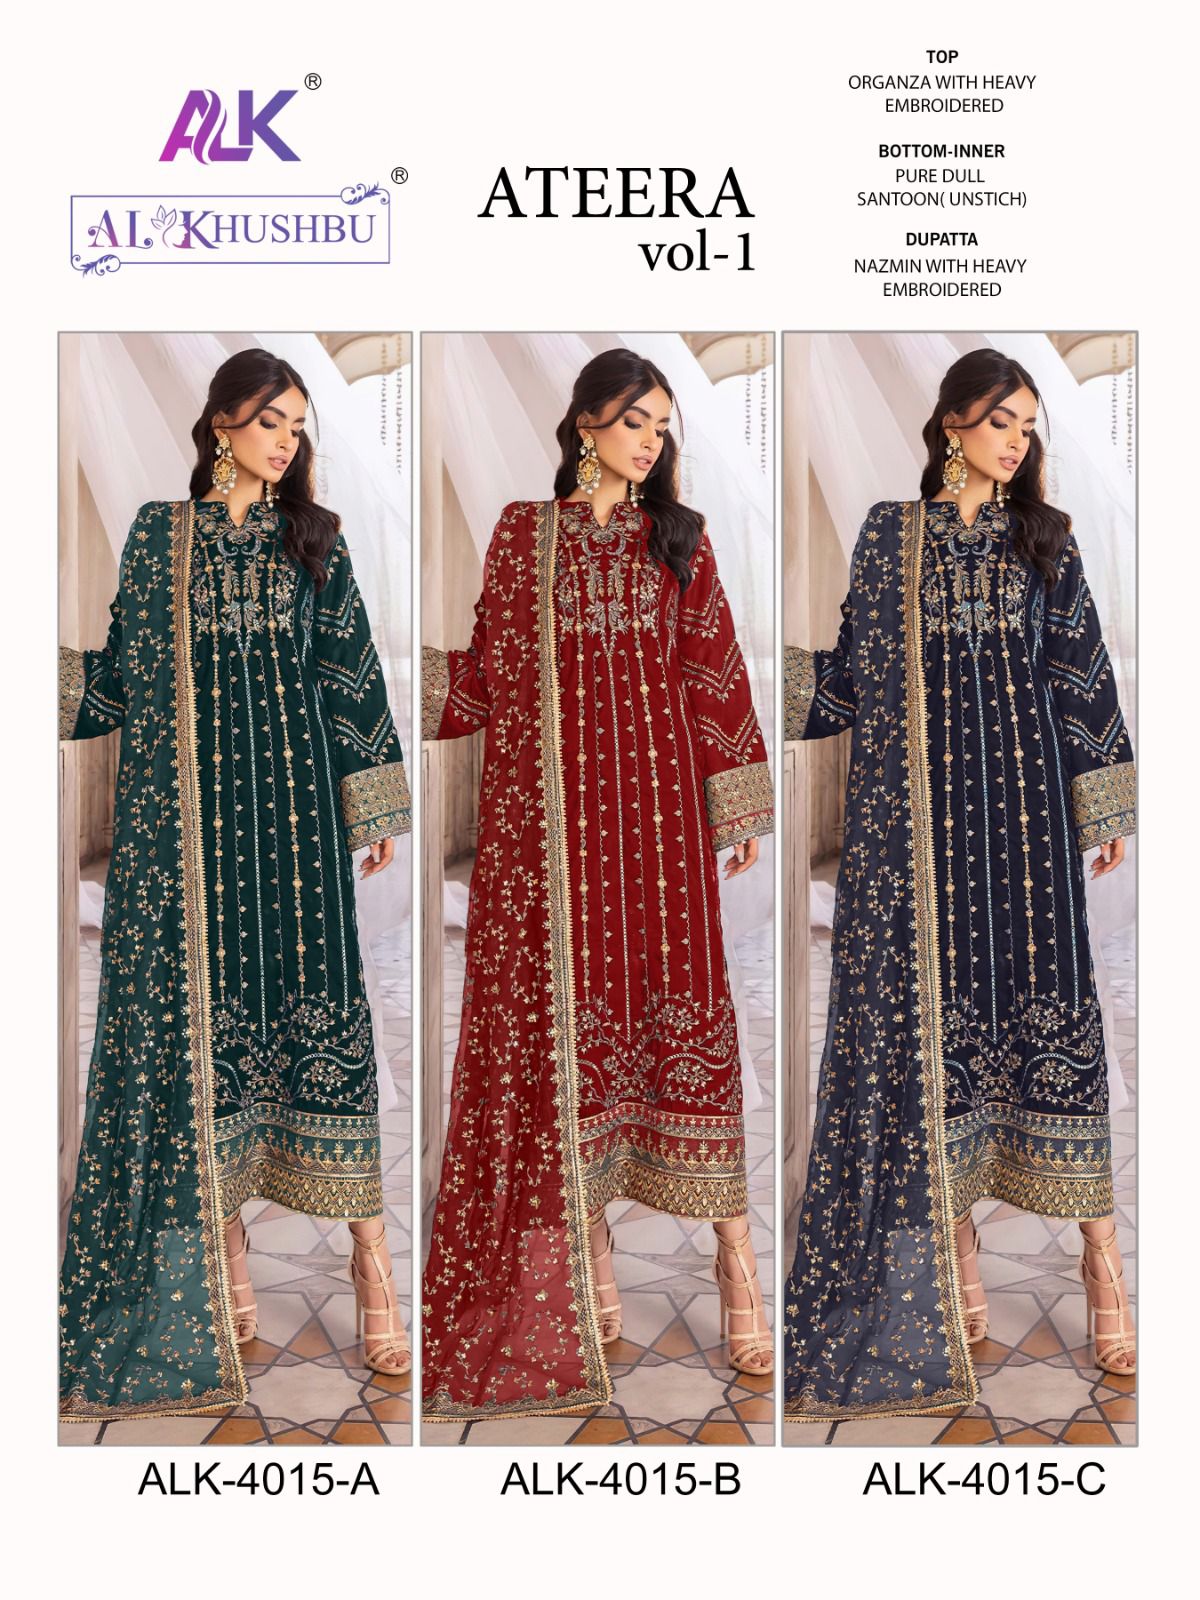 AL Khushbu Ateera Vol-1 4015 Colors 